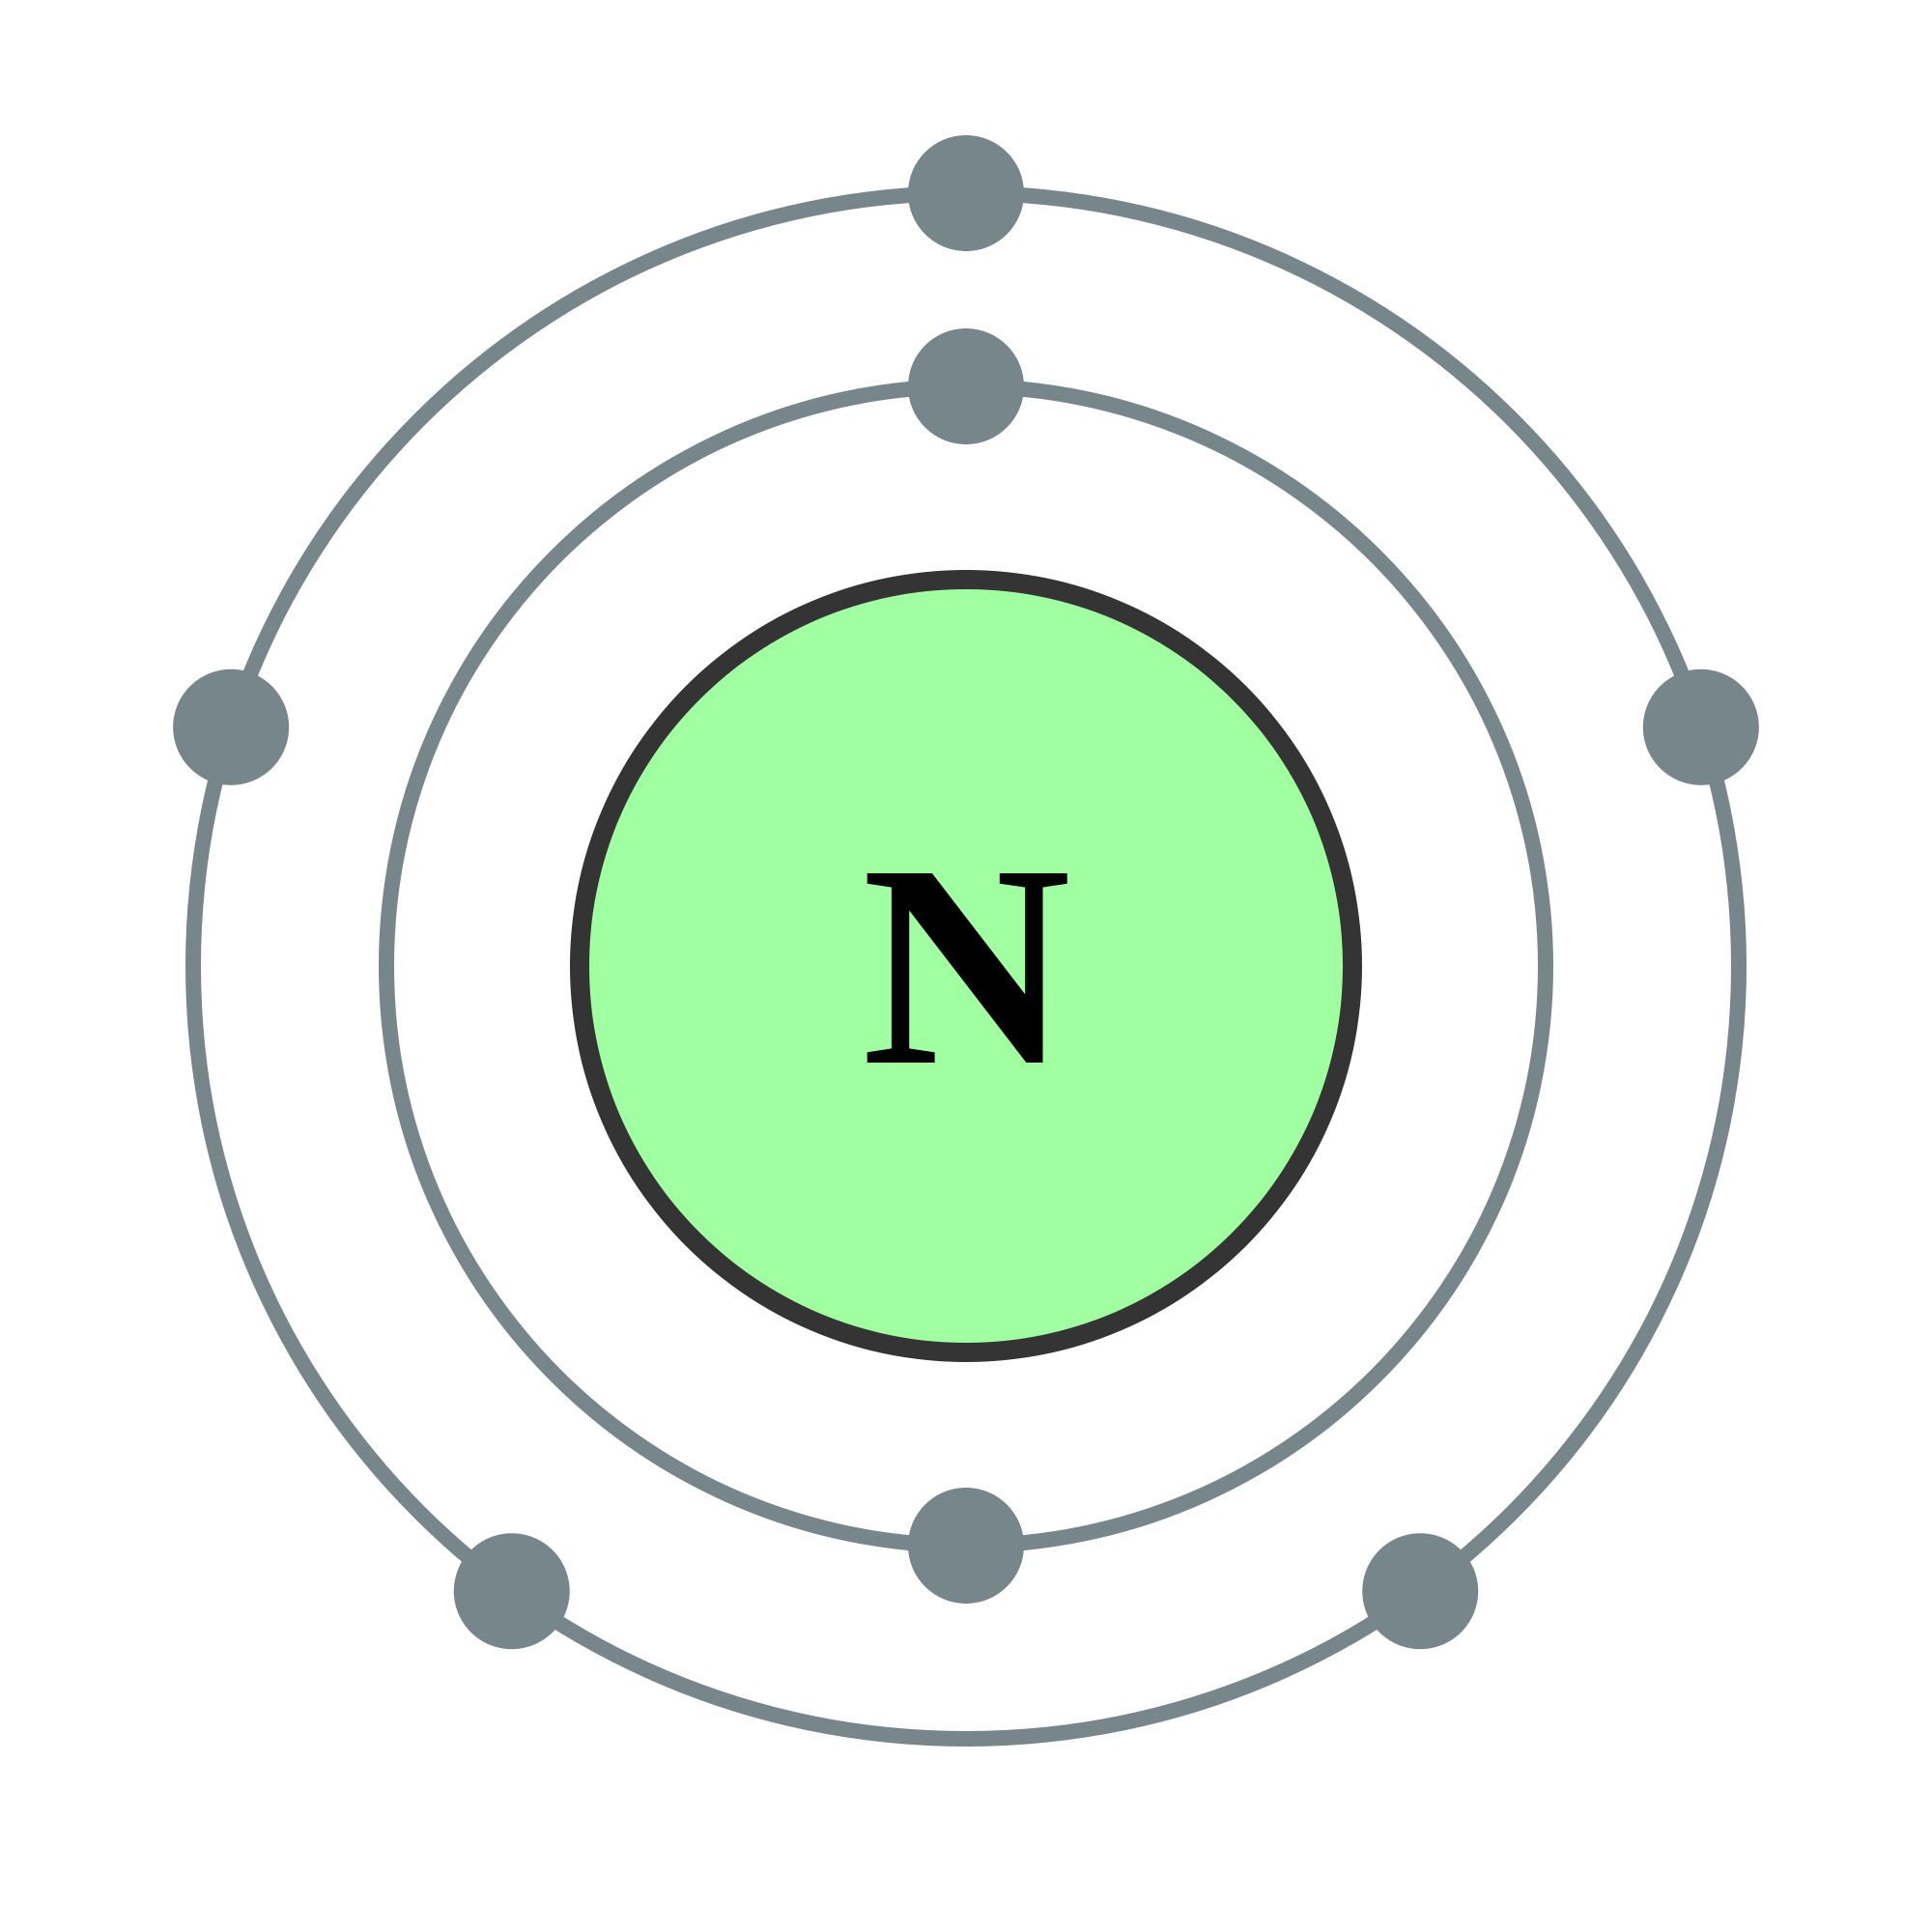 Кислород строение атома элемента. Модель электронного строения кислорода. Модель атома кислорода. Атомная модель кислорода. Структура атома кислорода.